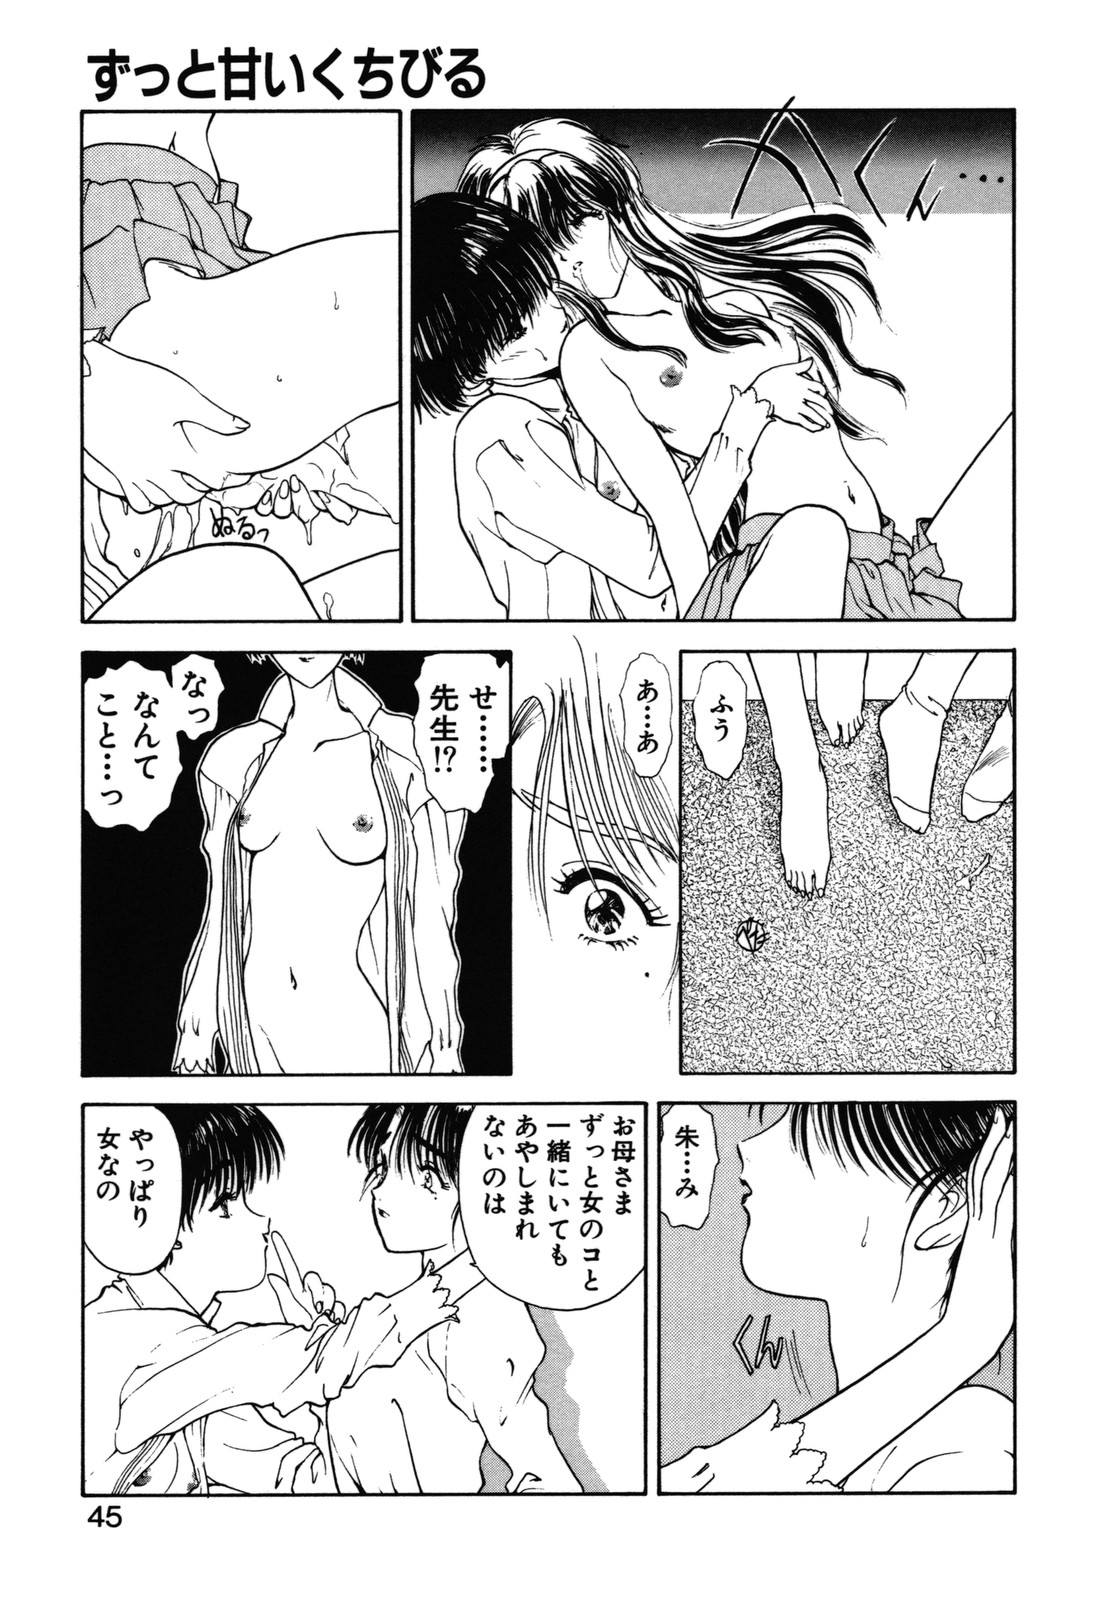 [Utatane Hiroyuki] COUNT DOWN page 46 full